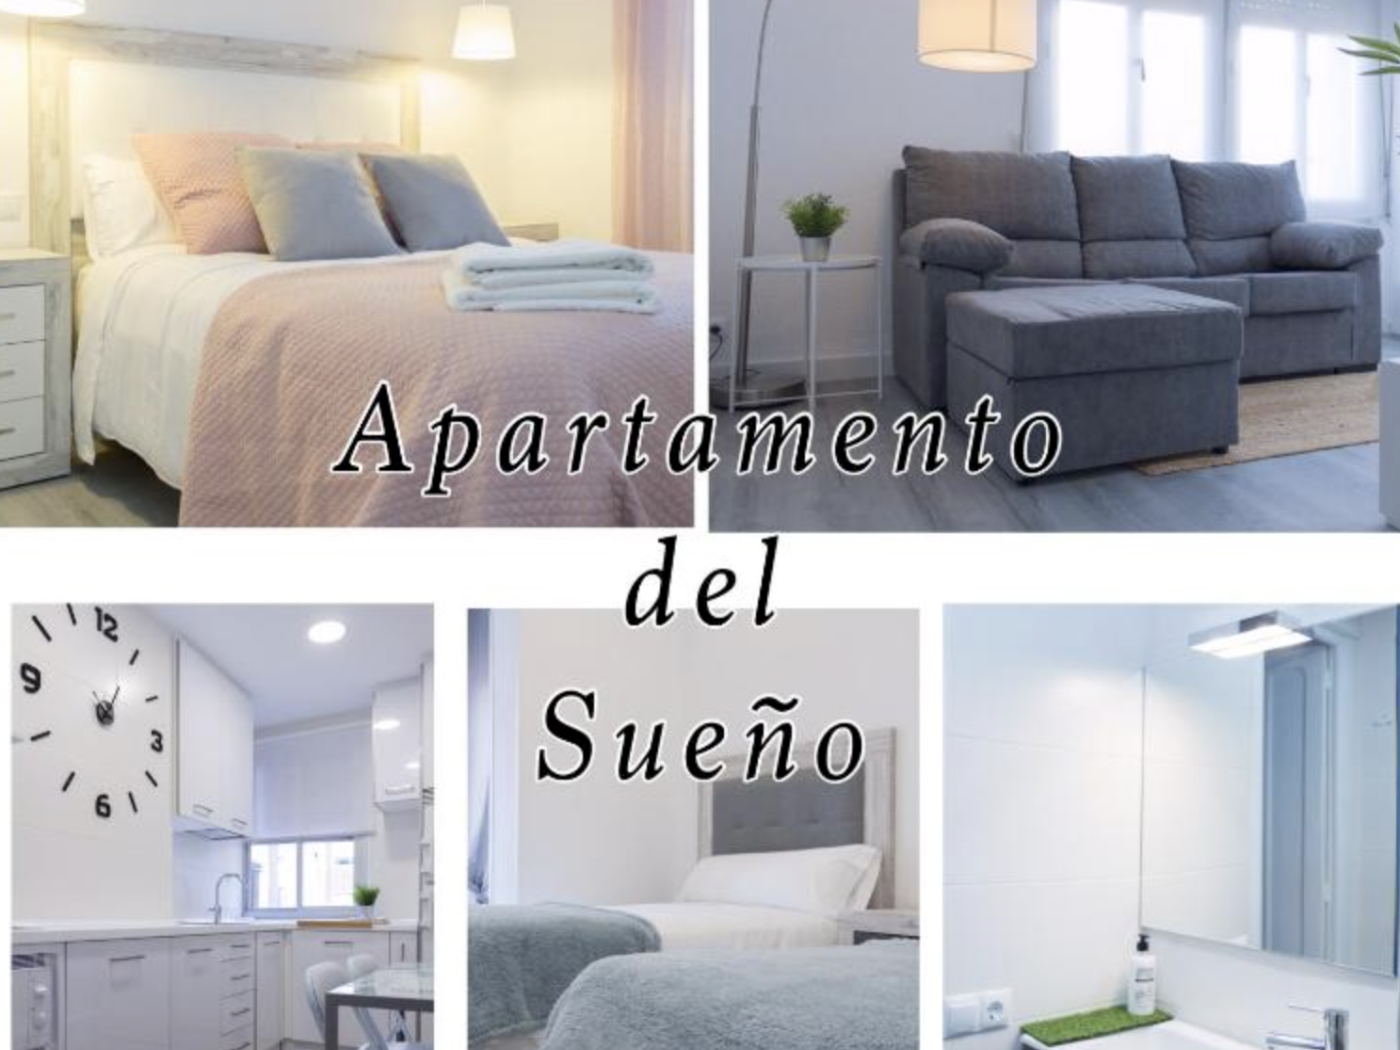 Apartamento del Sueño in Logroño